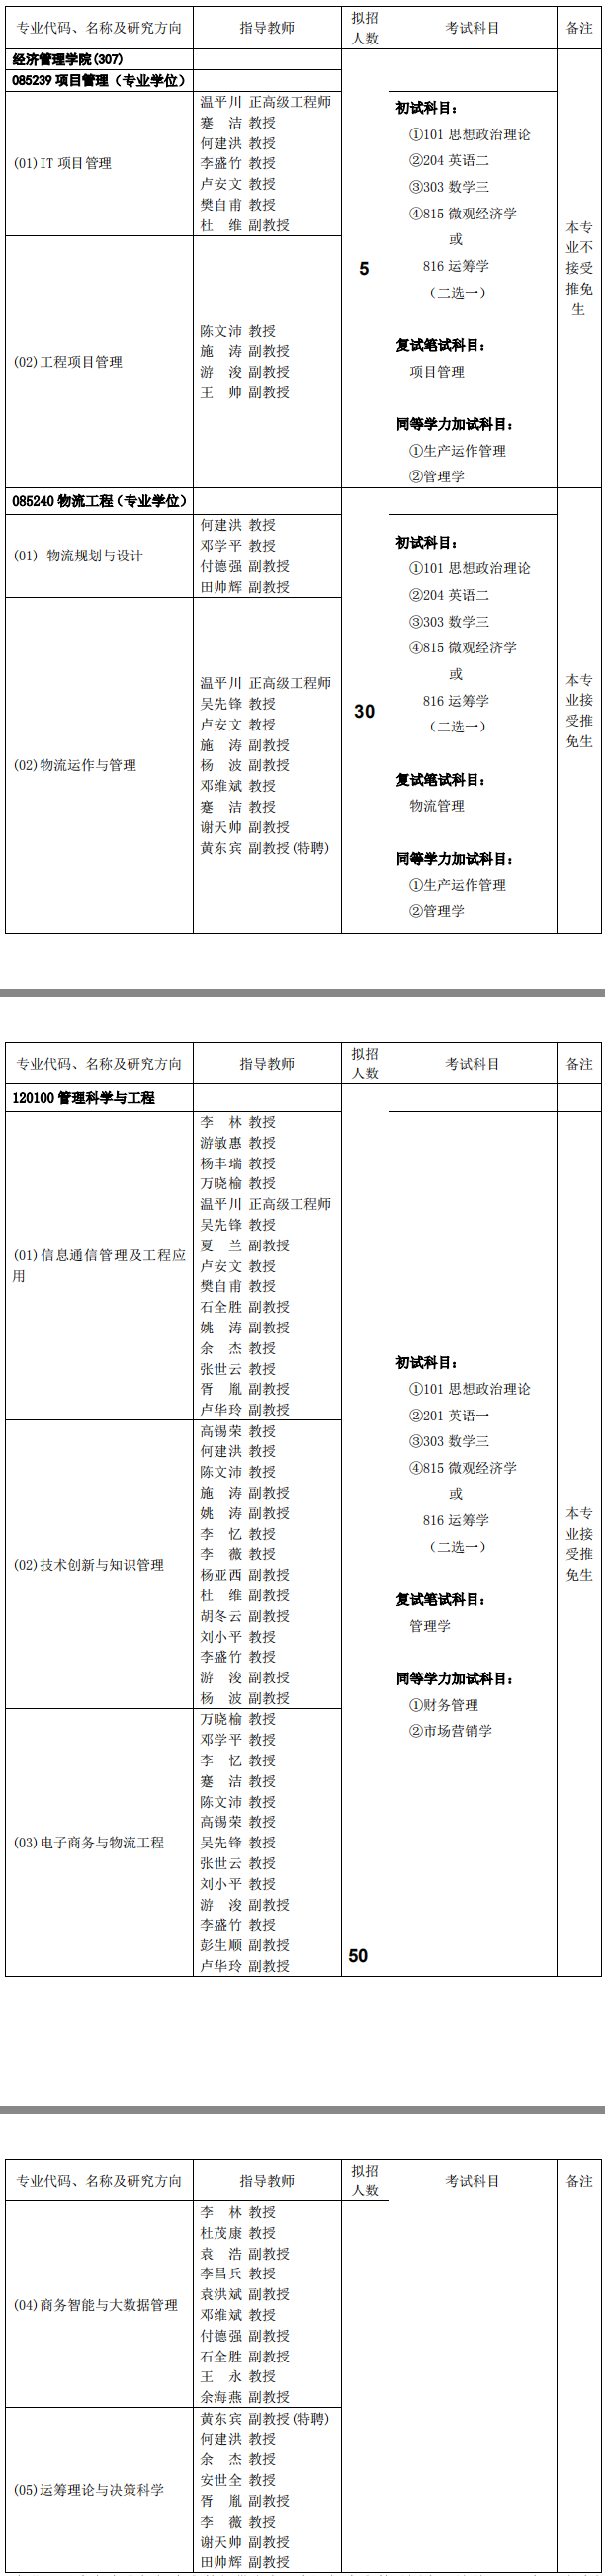 重庆邮电大学经济管理学院2019考研专业目录